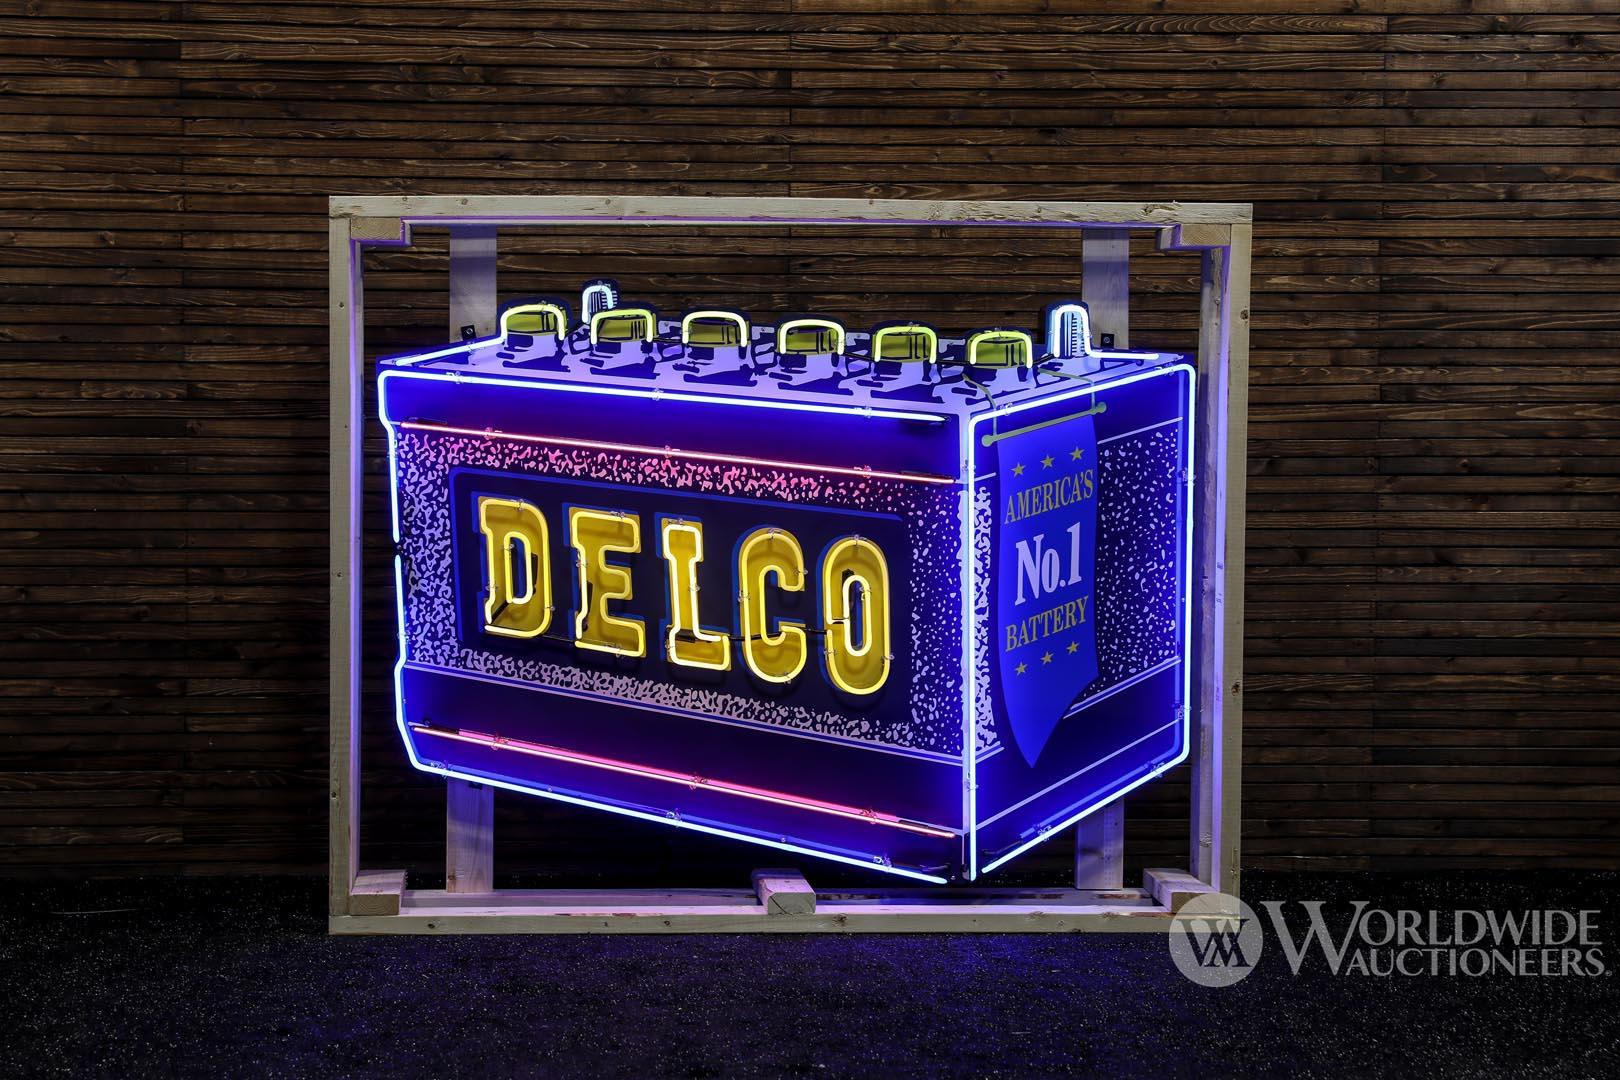 Delco America's No. 1 Battery Neon Sign